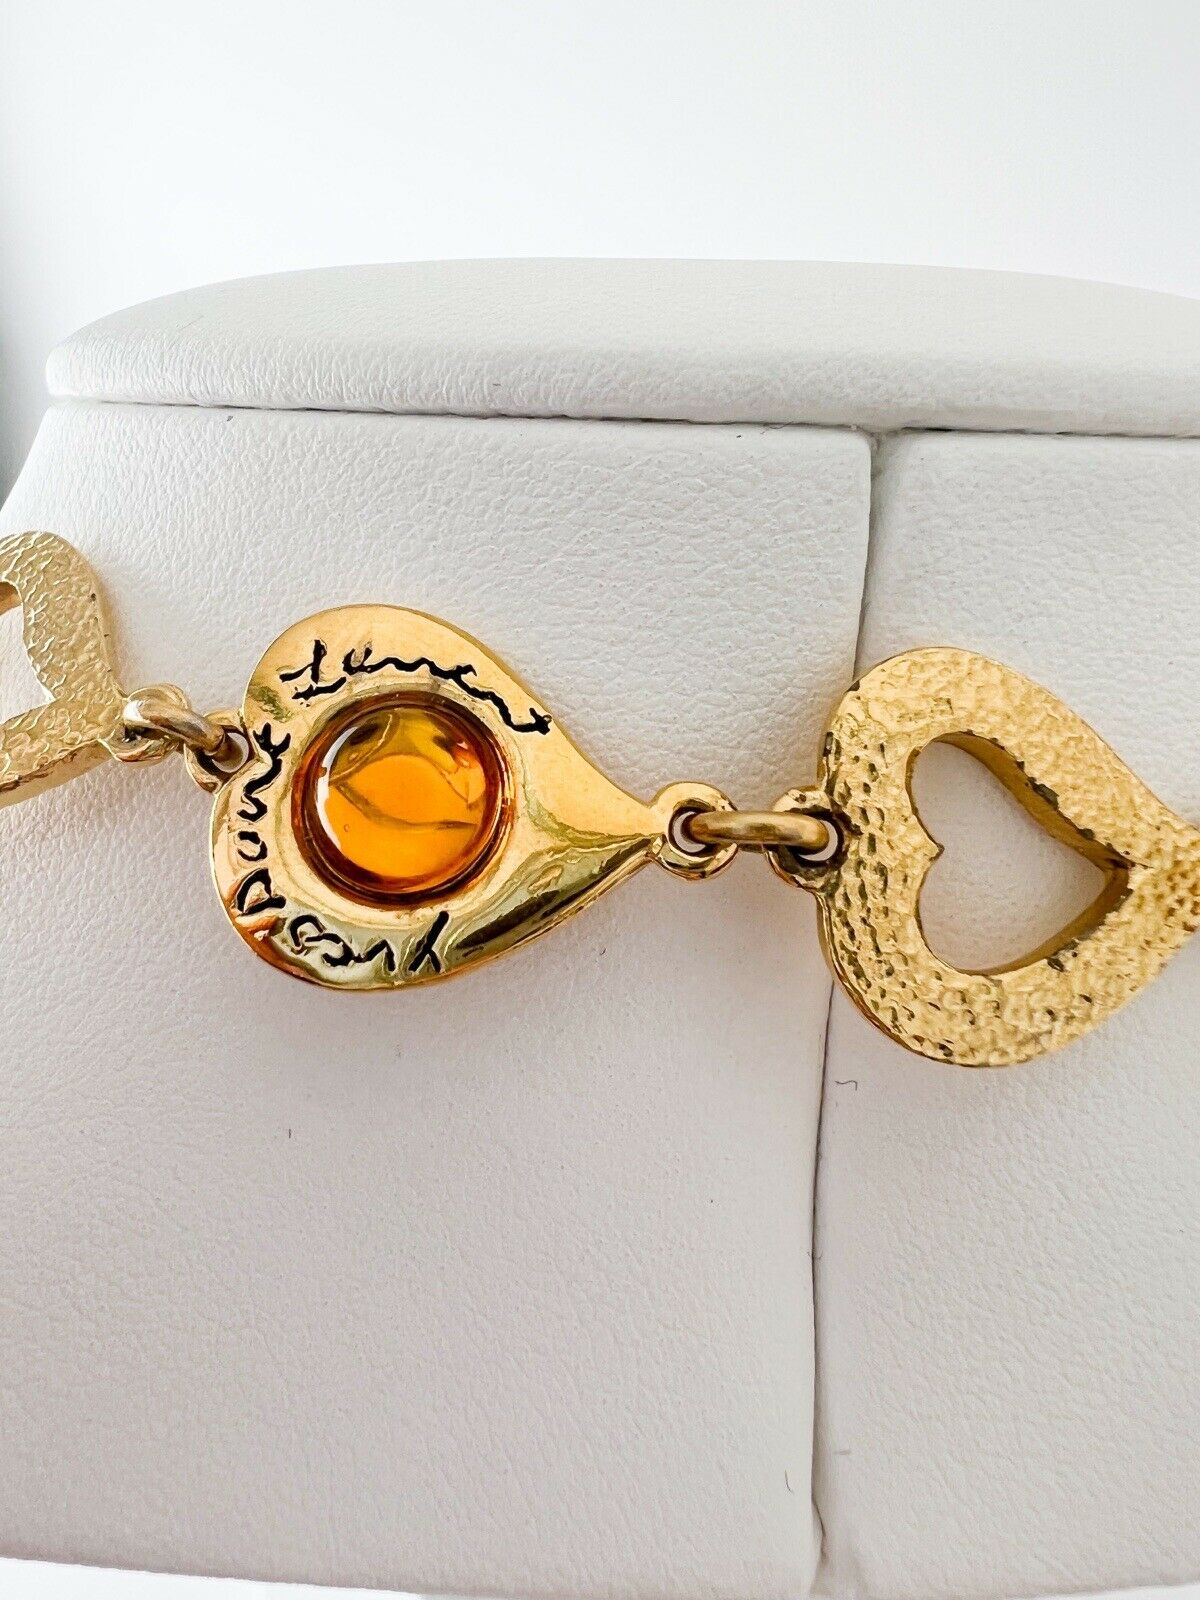 YSL Yves Saint Laurent Vintage Necklace